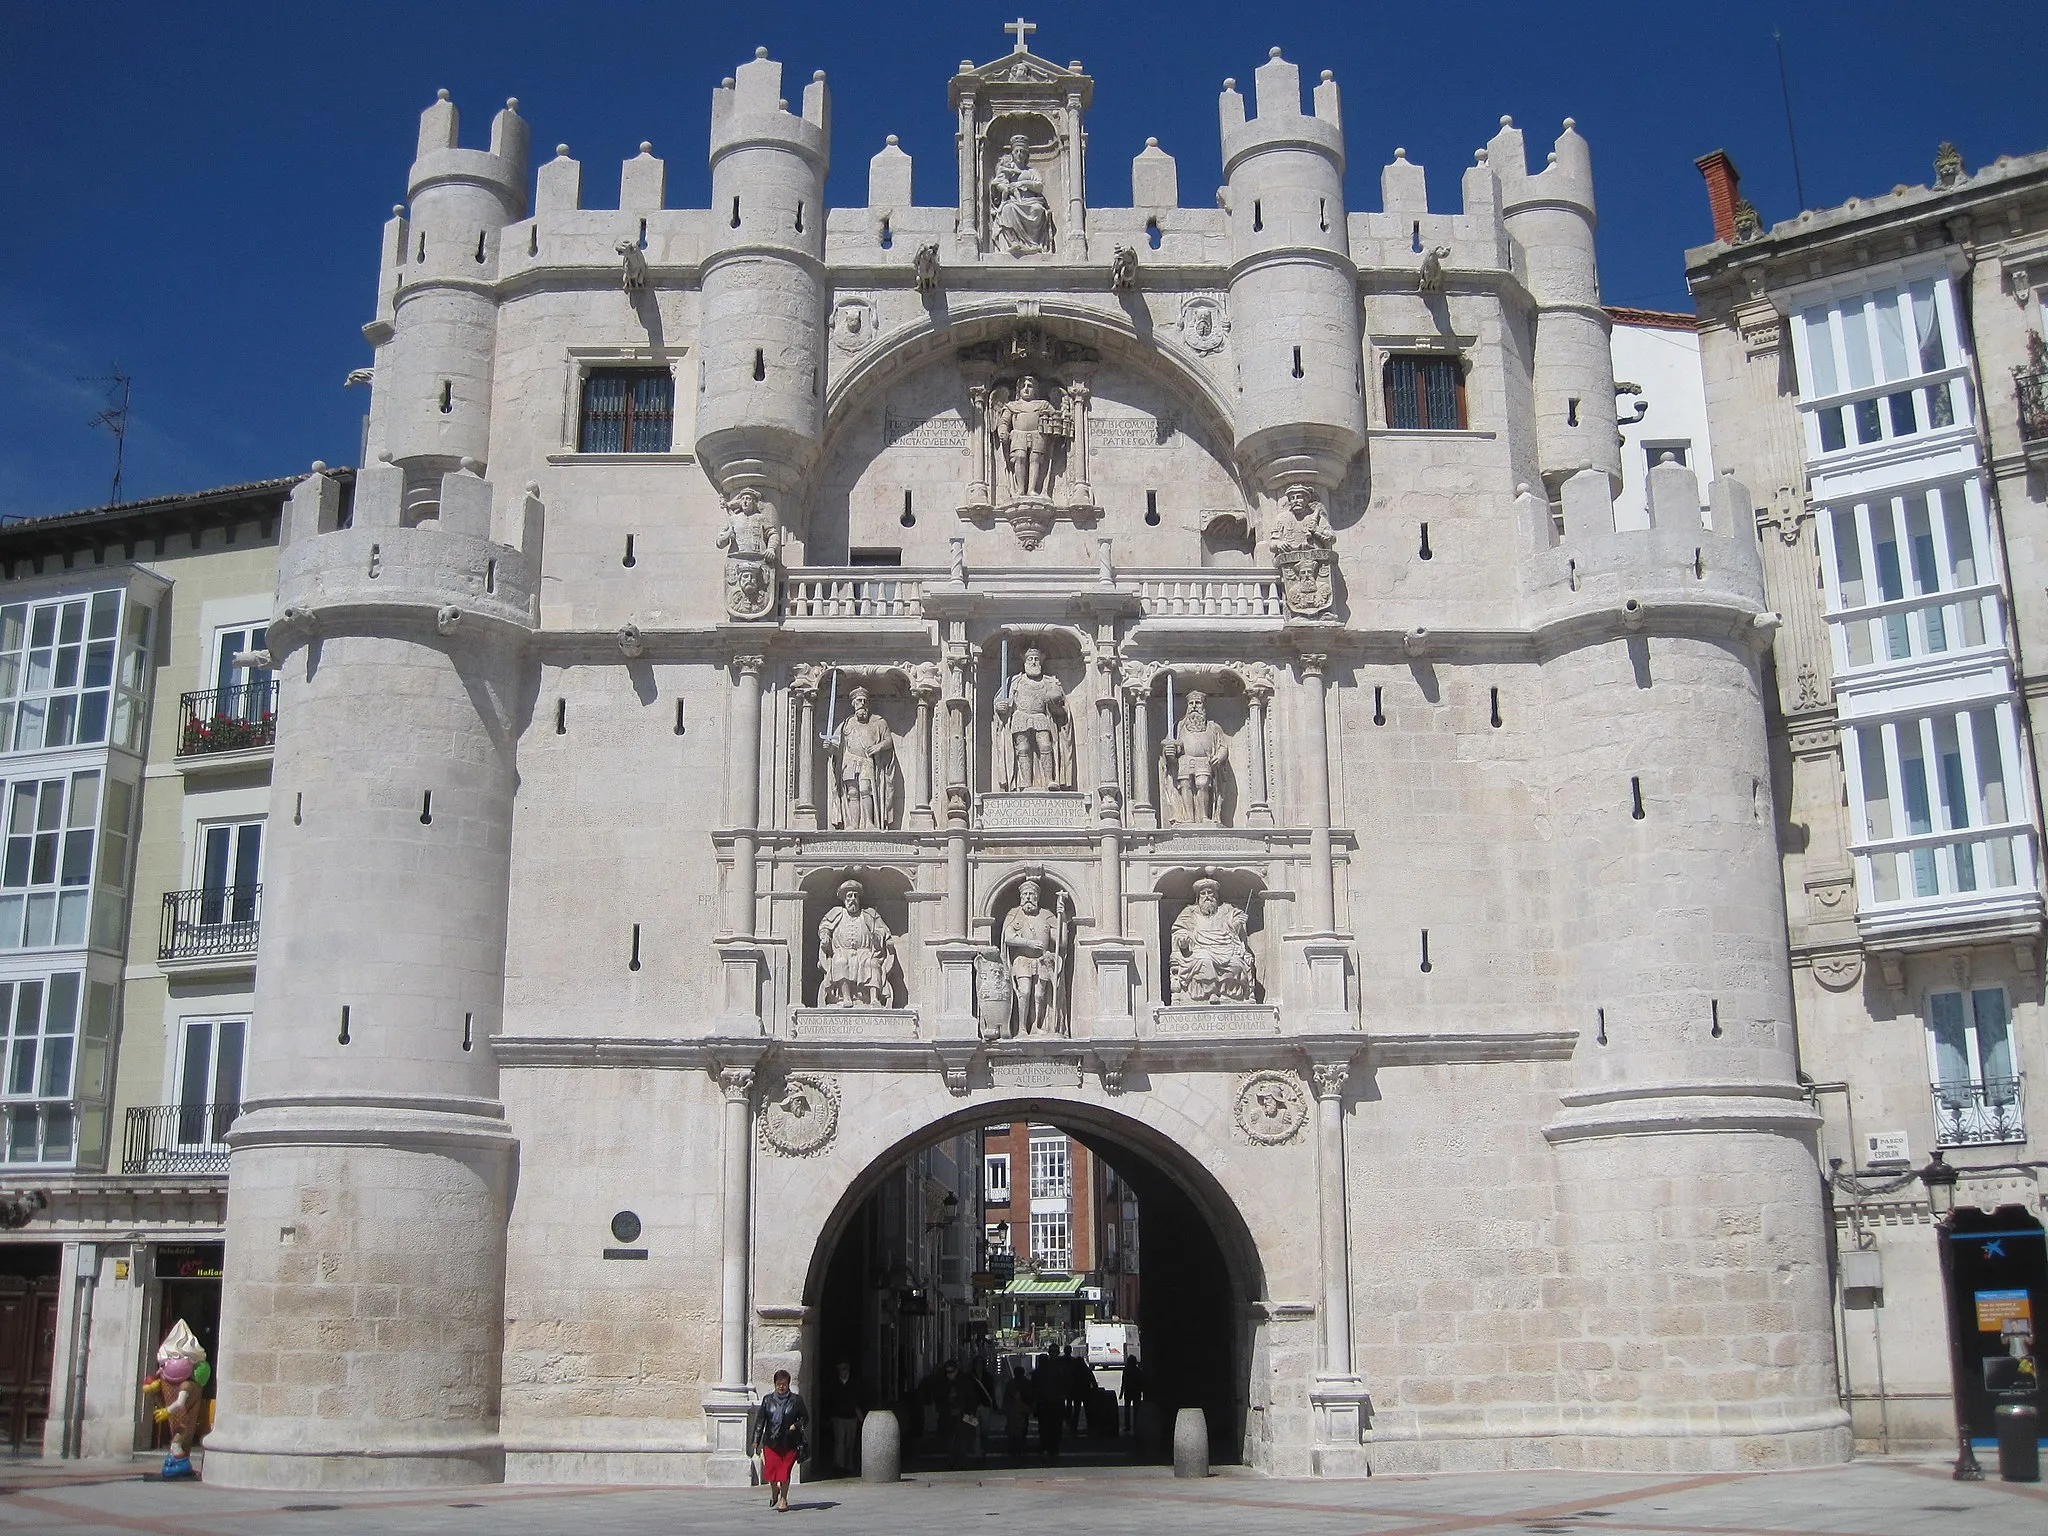 Image of Castilla y León